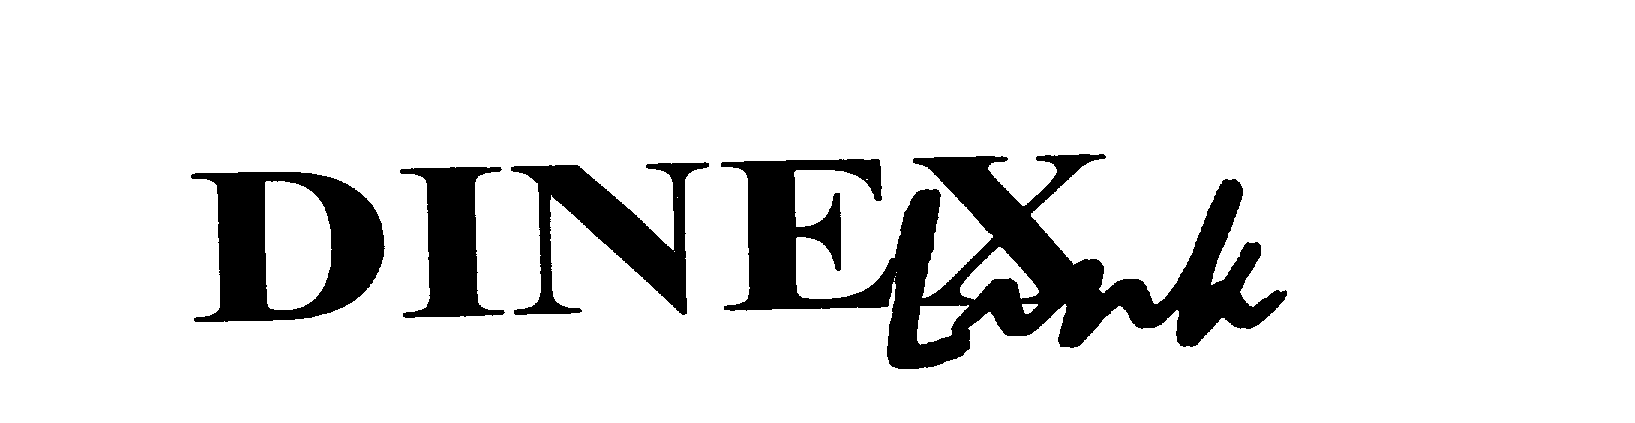 Trademark Logo DINEX LINK